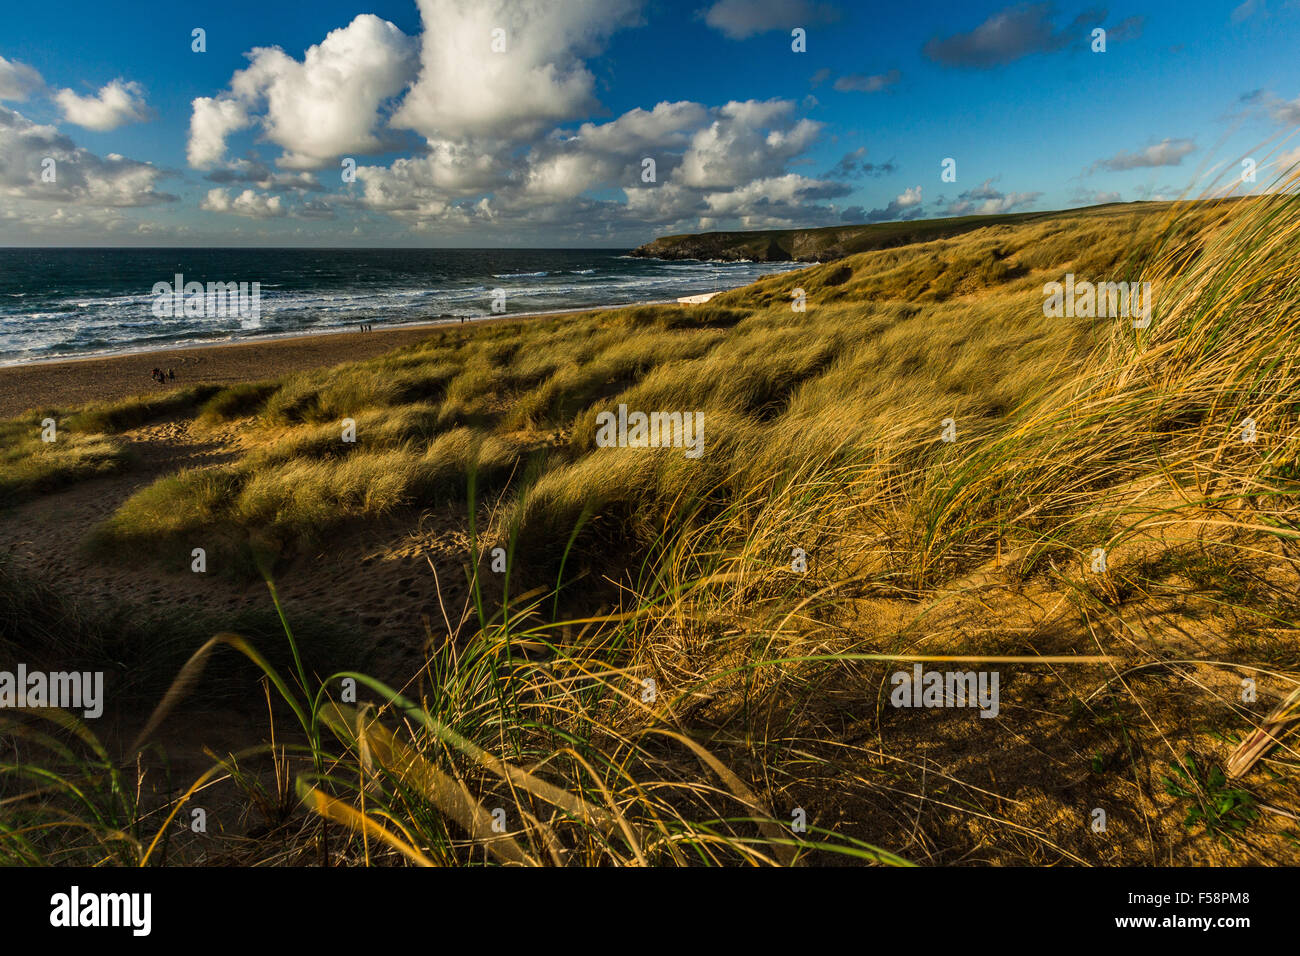 L'ammophile des graminées et des dunes de sable située à Baie de Holywell à Cornwall au cours de la lumière du soir près de coucher du soleil. Banque D'Images